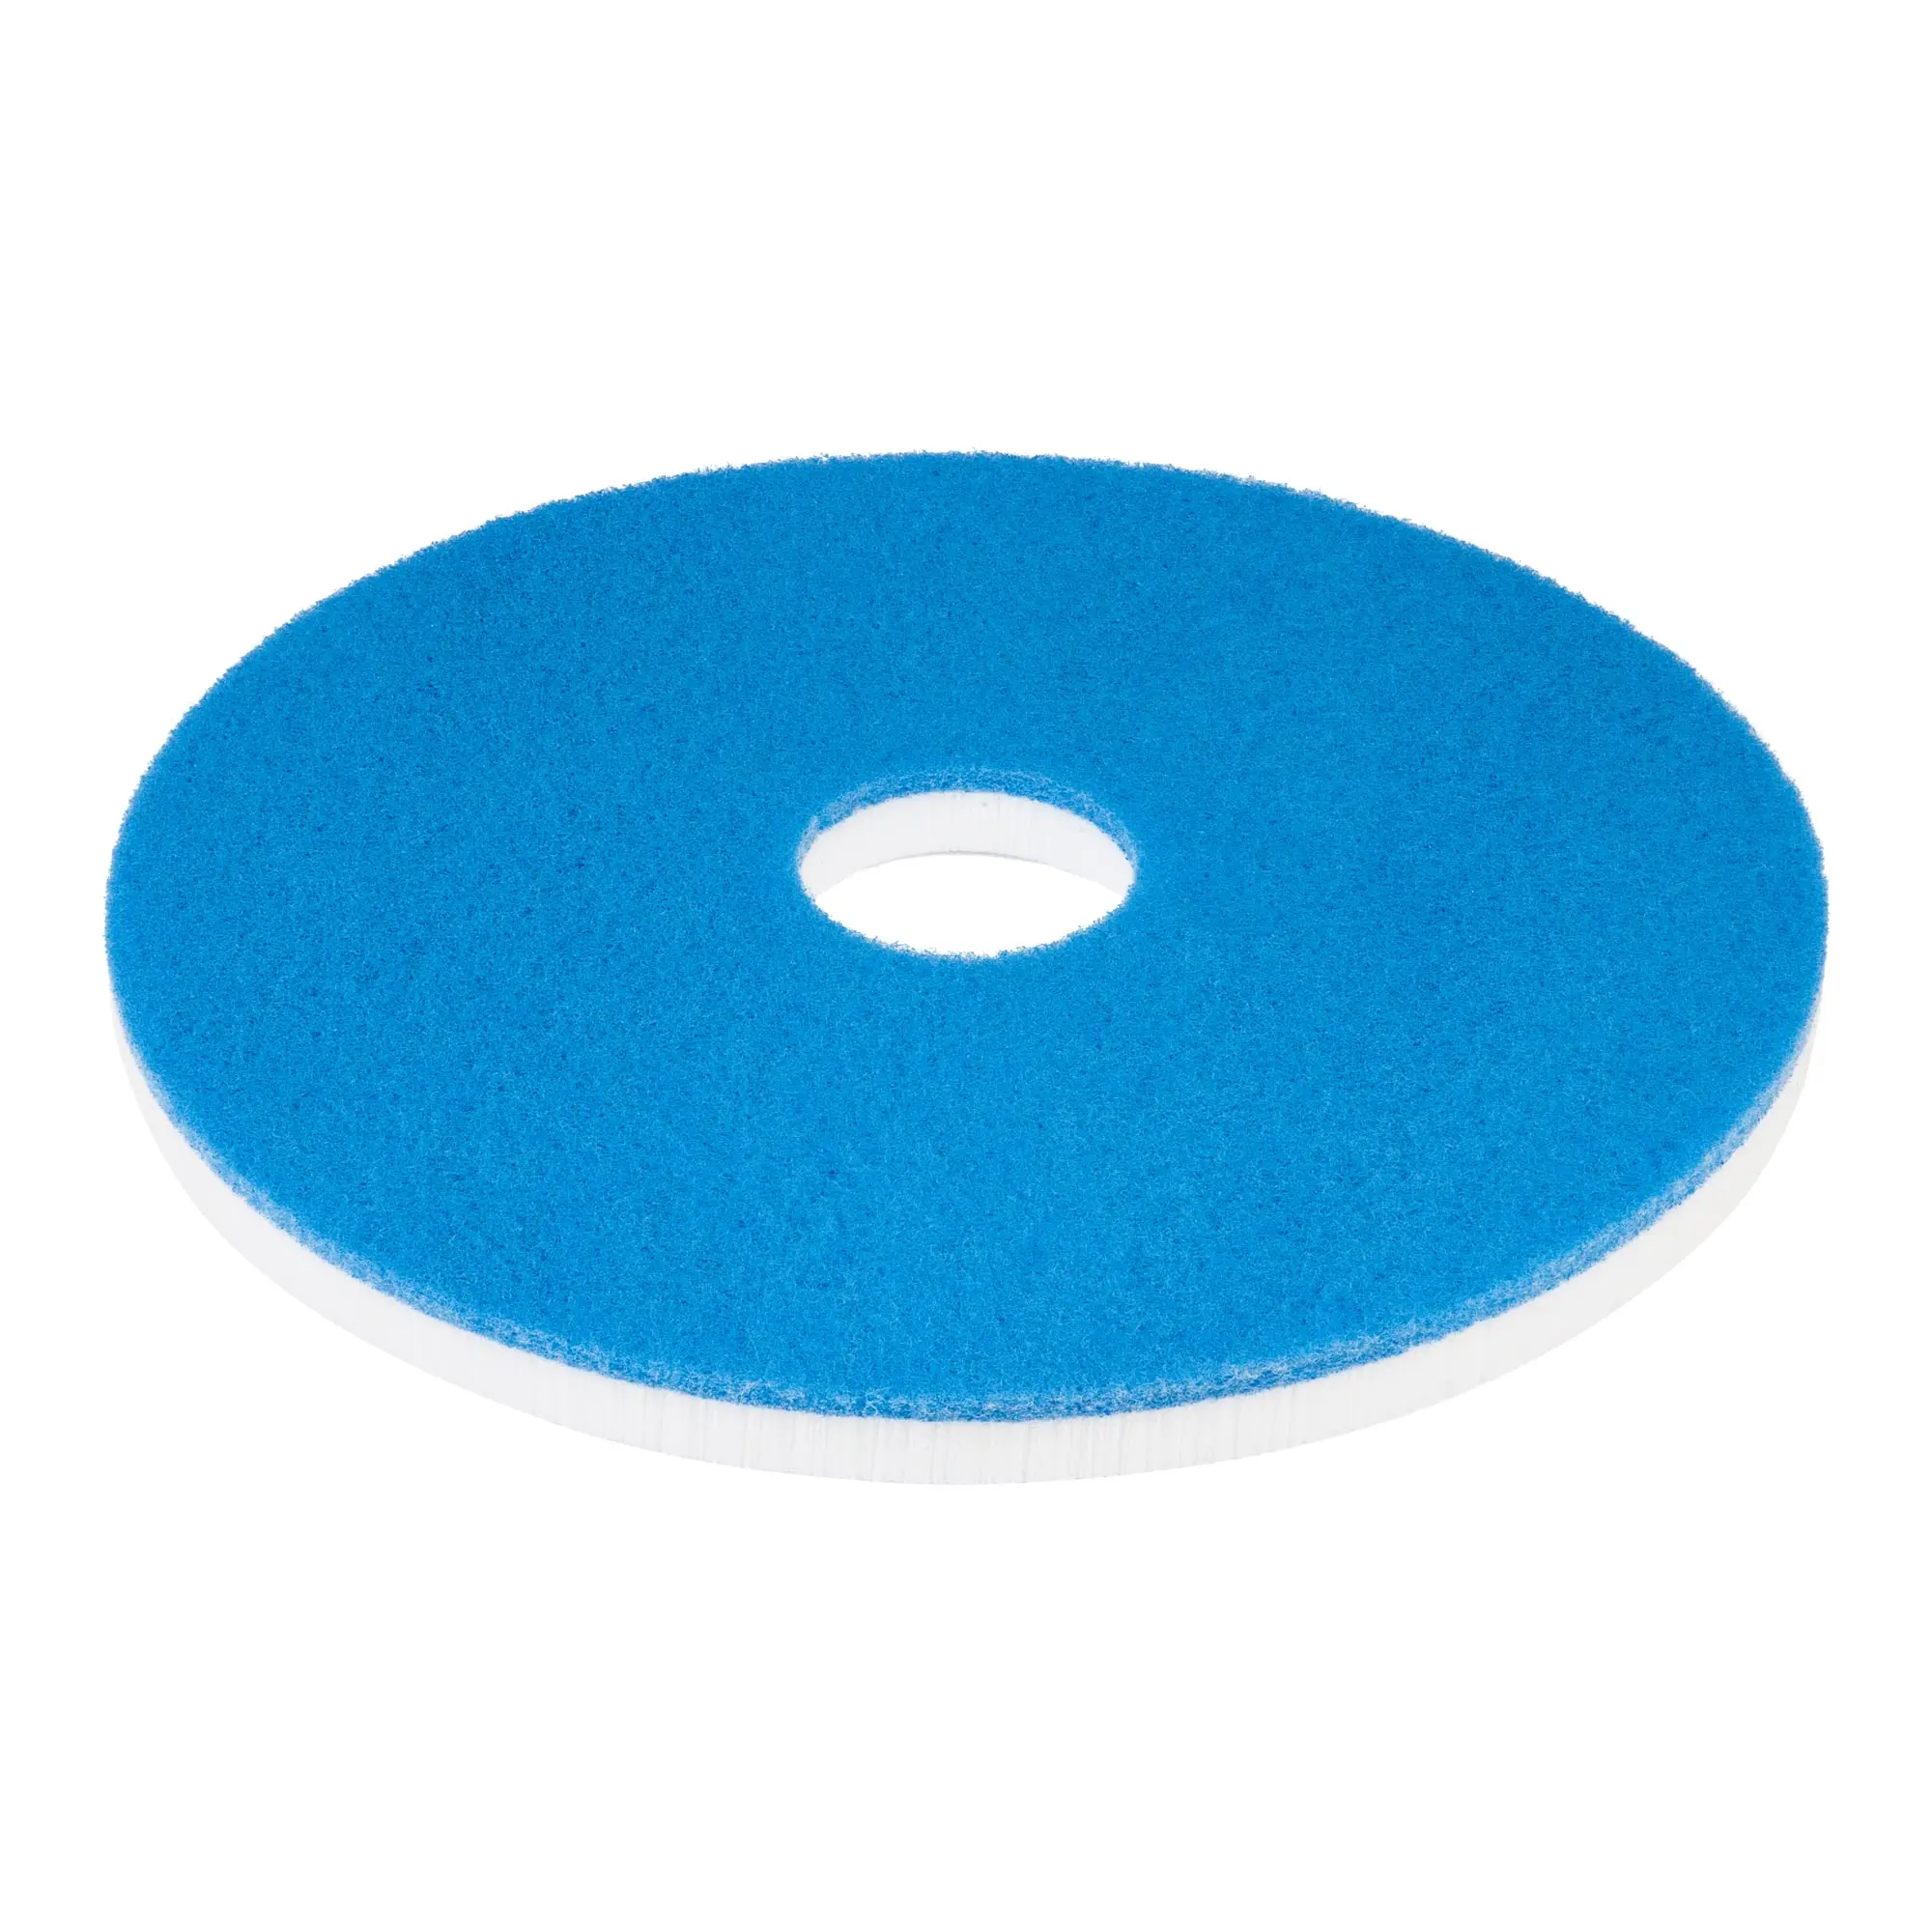 Sito Power-Clean Disc-Pad Schmutzentferner Maschinenpads, 5 Stück